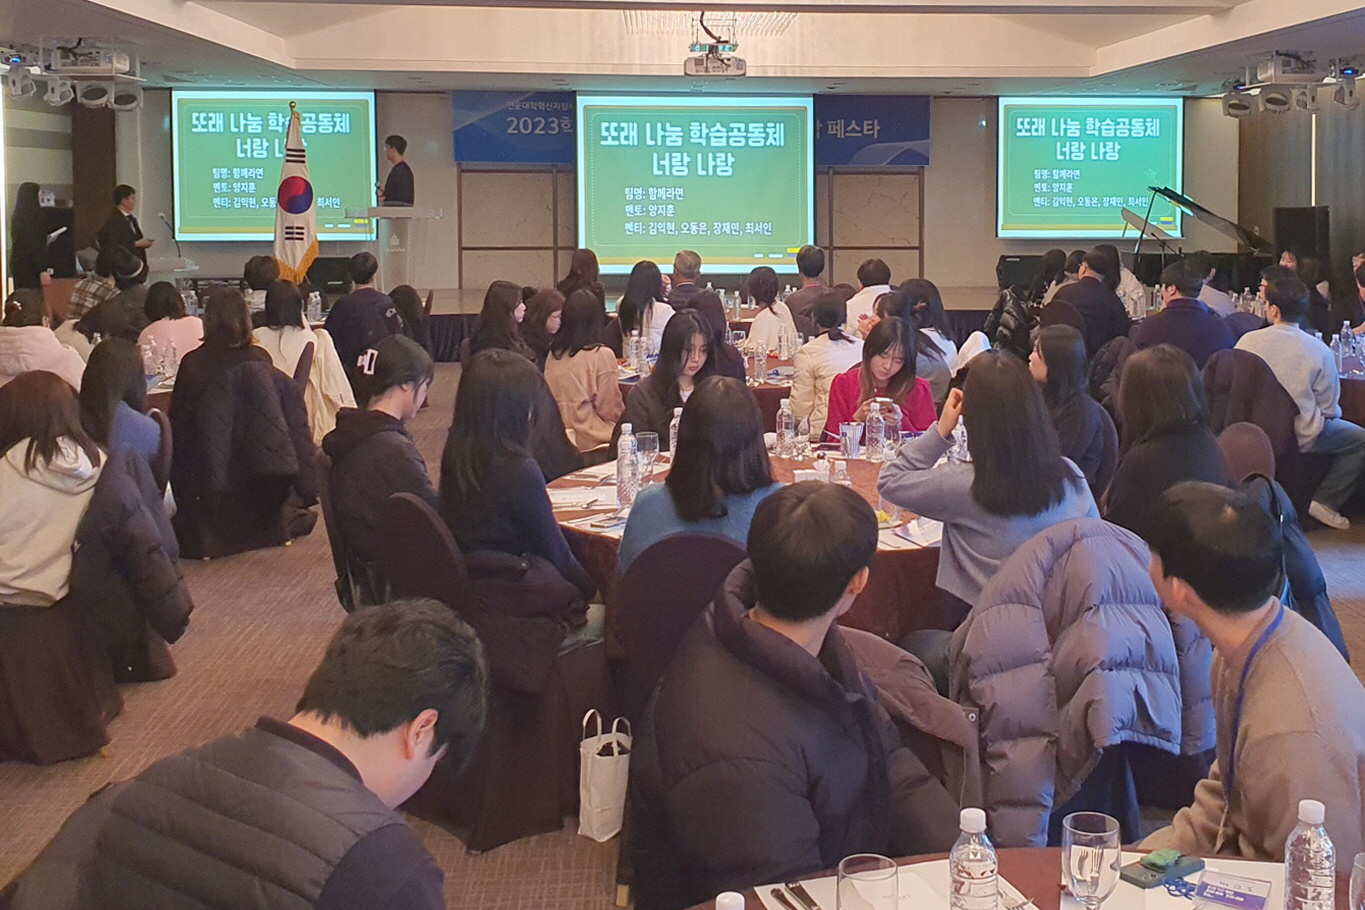 비교과 프로그램의 성과 공유 위해 '2023학년도 창의융합 페스타' 개최 (3)